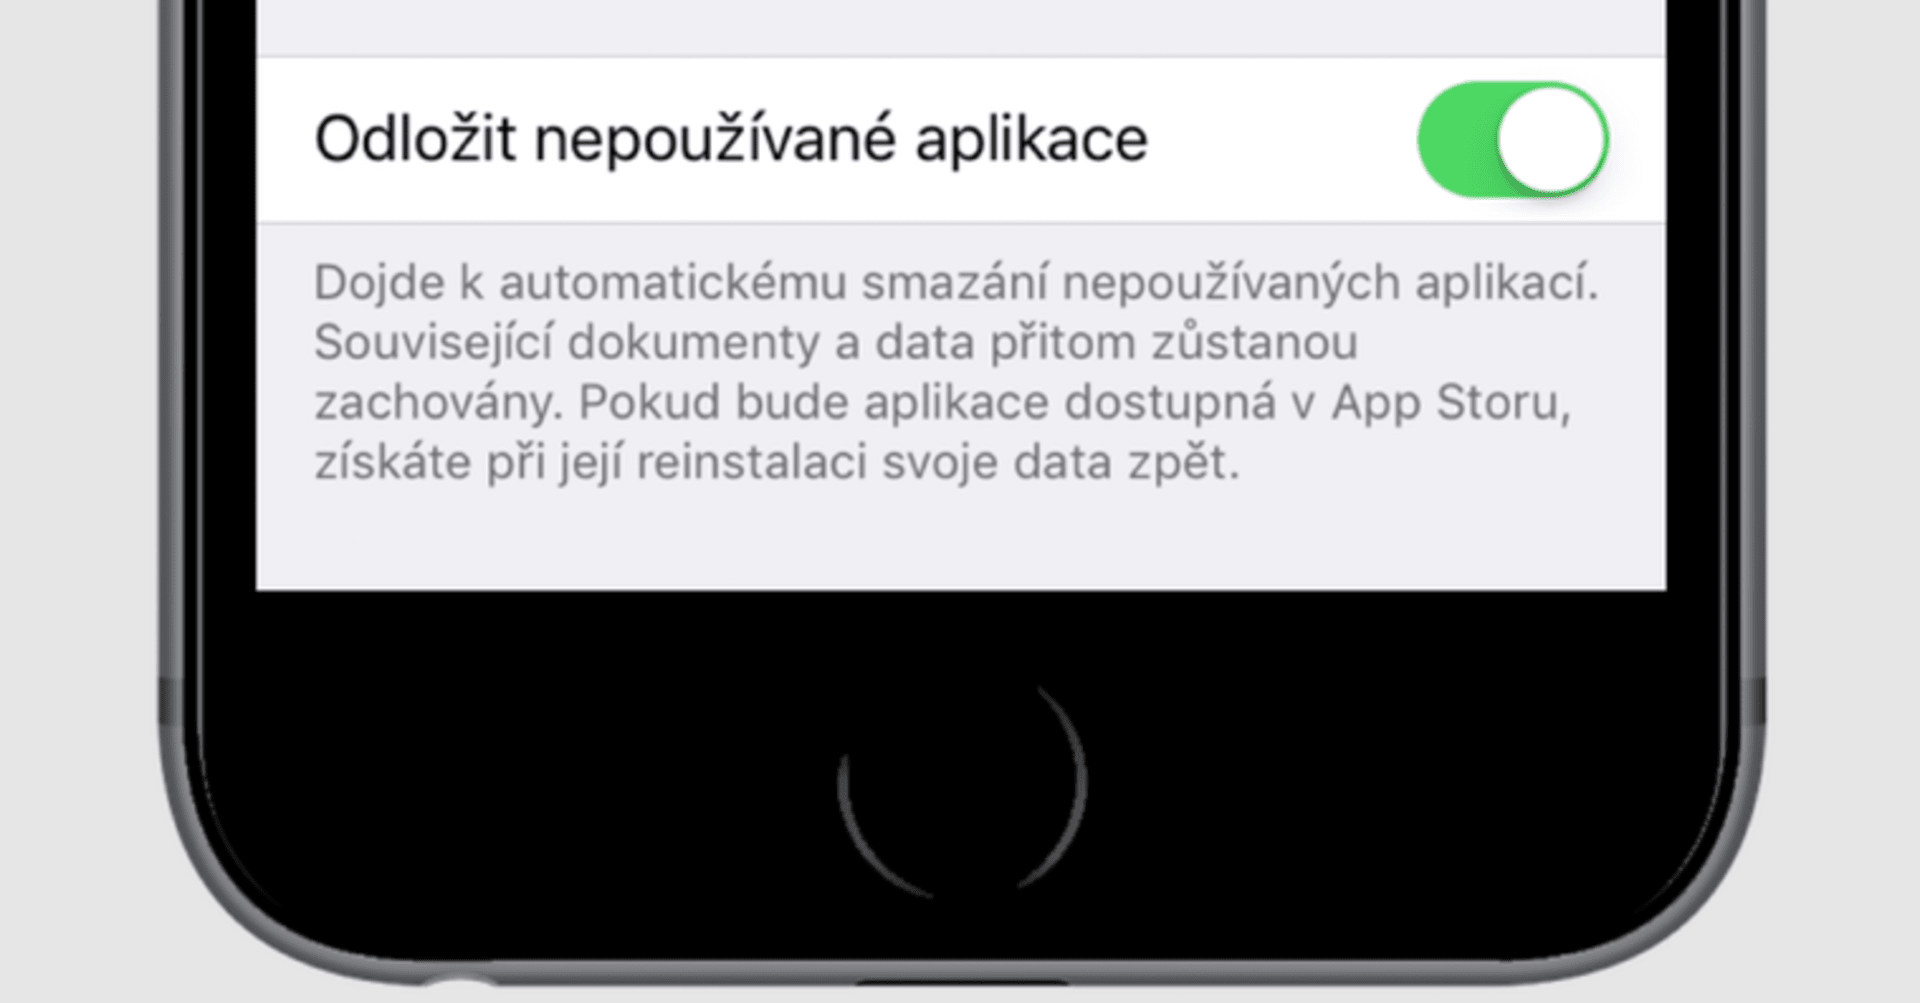 Možnost odložení aplikace v novém iOS 11